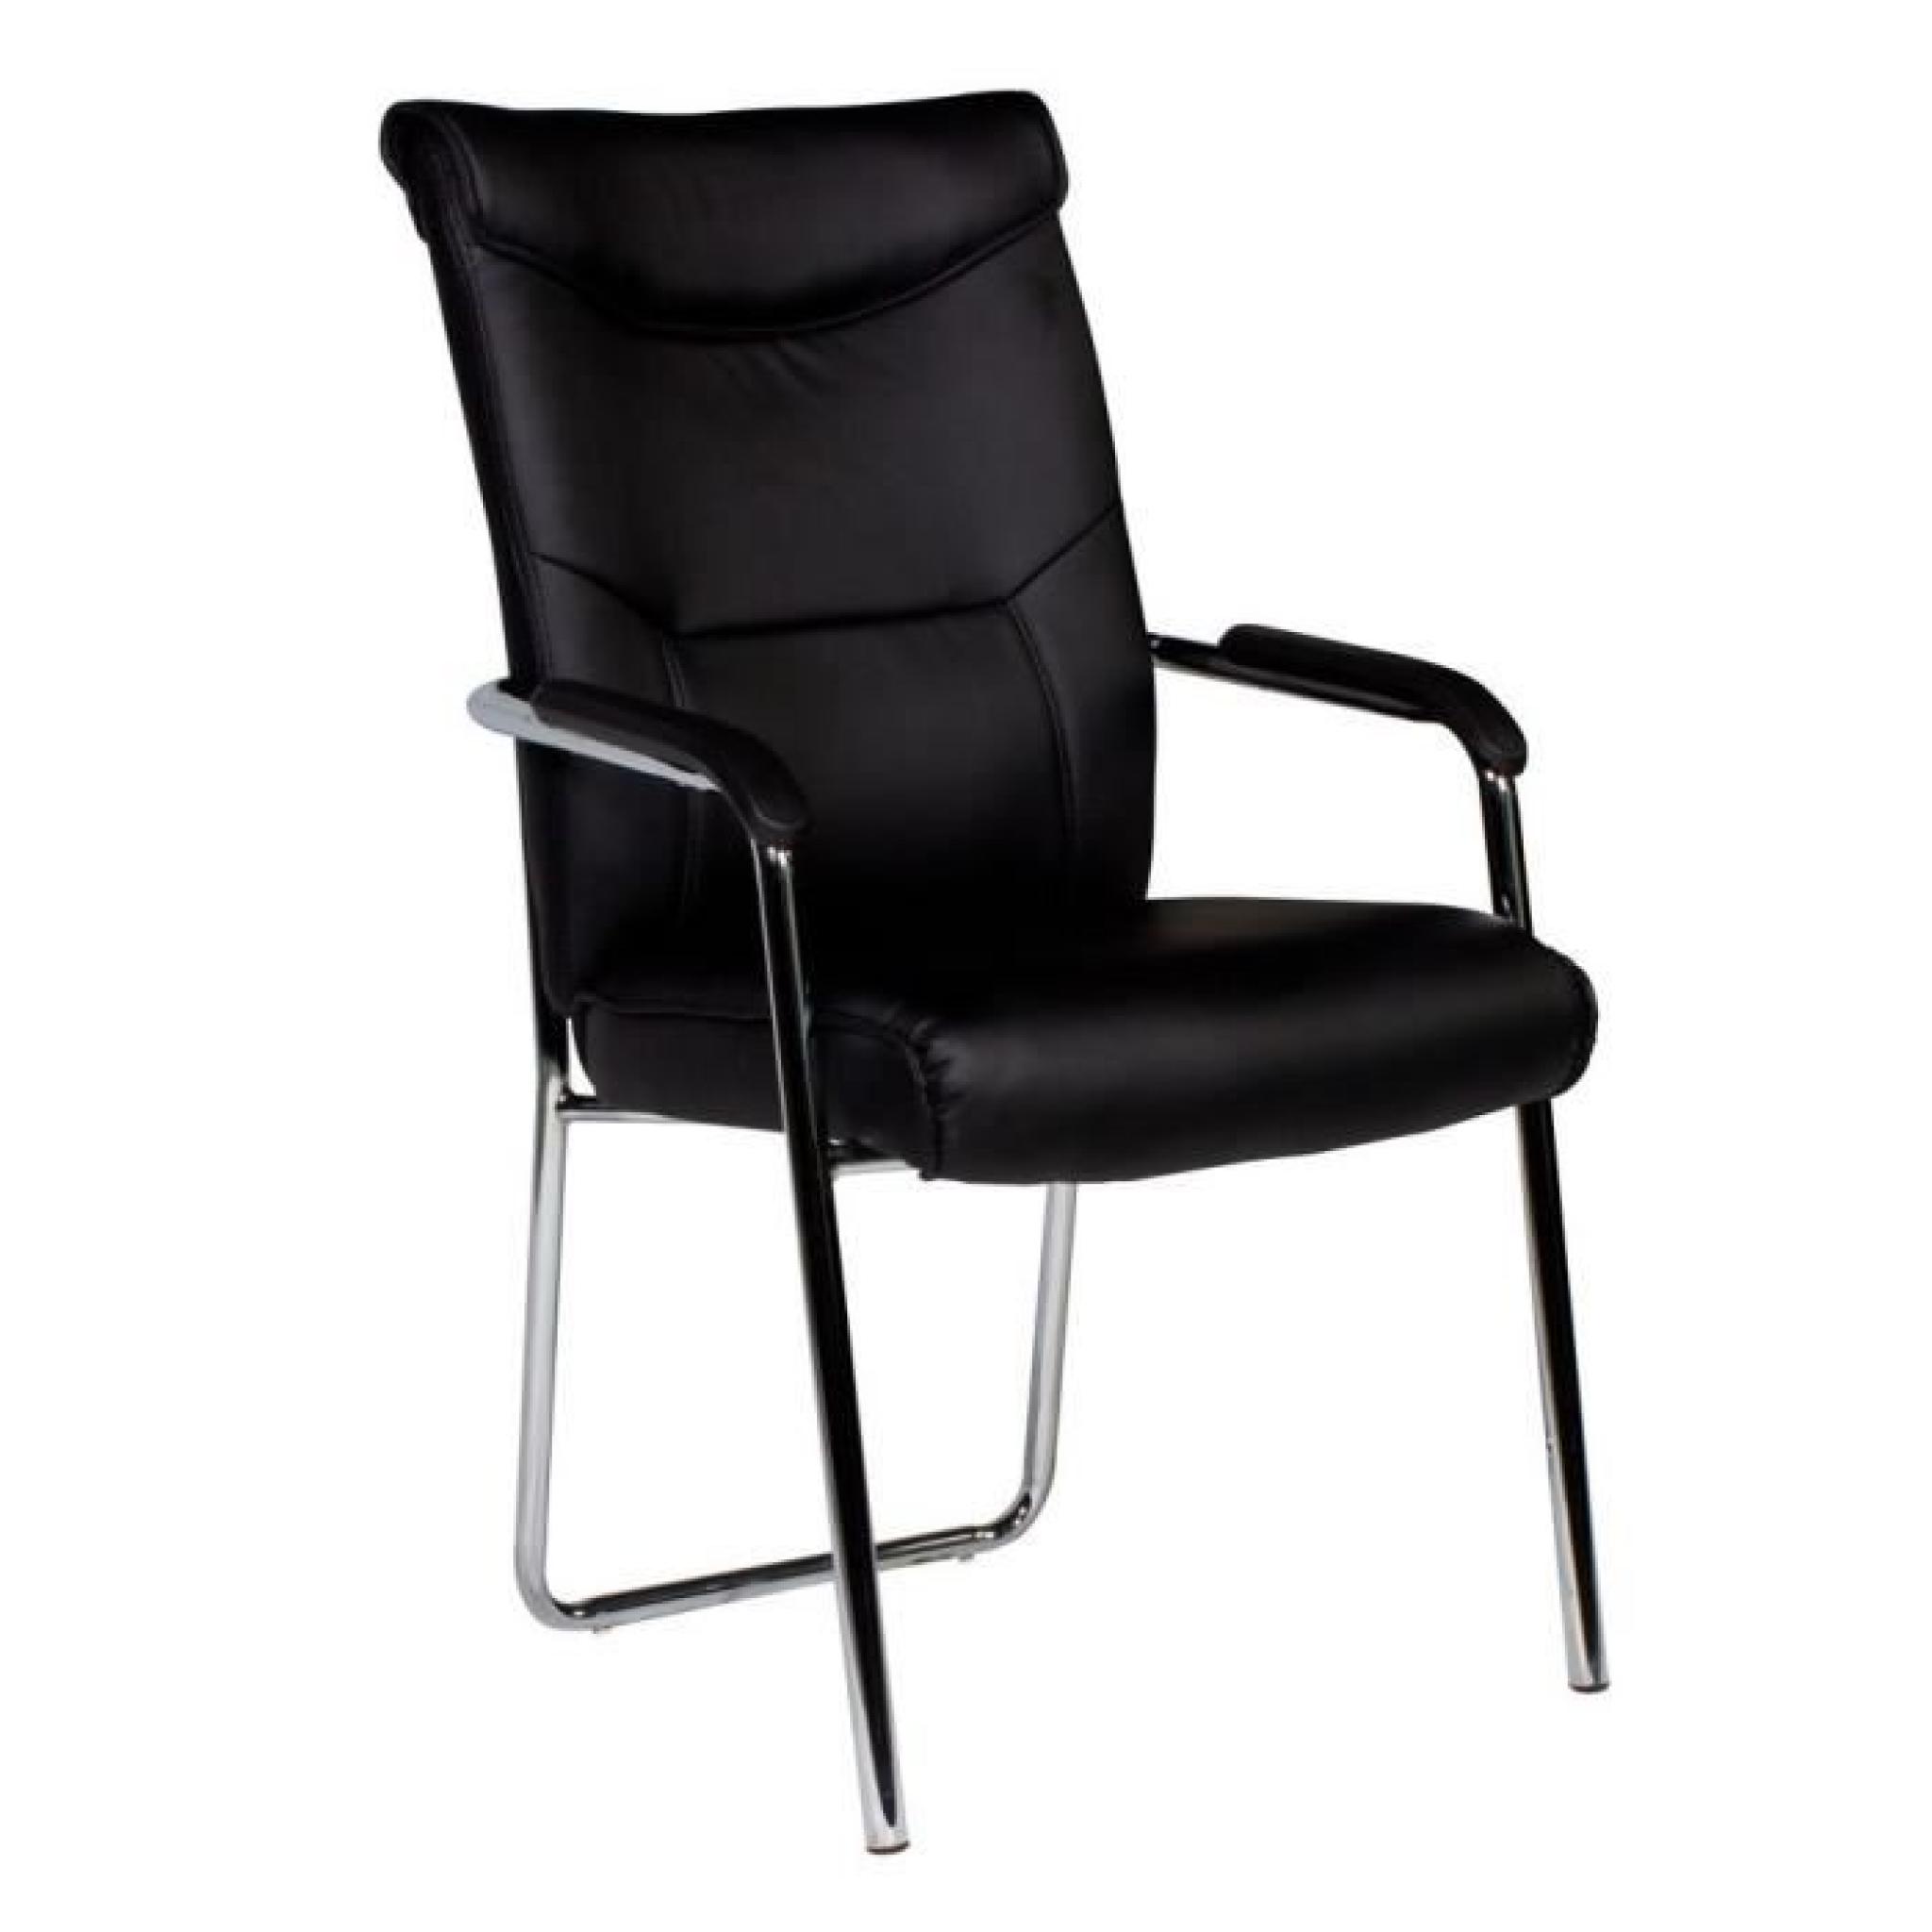 Chaise noir et acier chromé ultra moderne